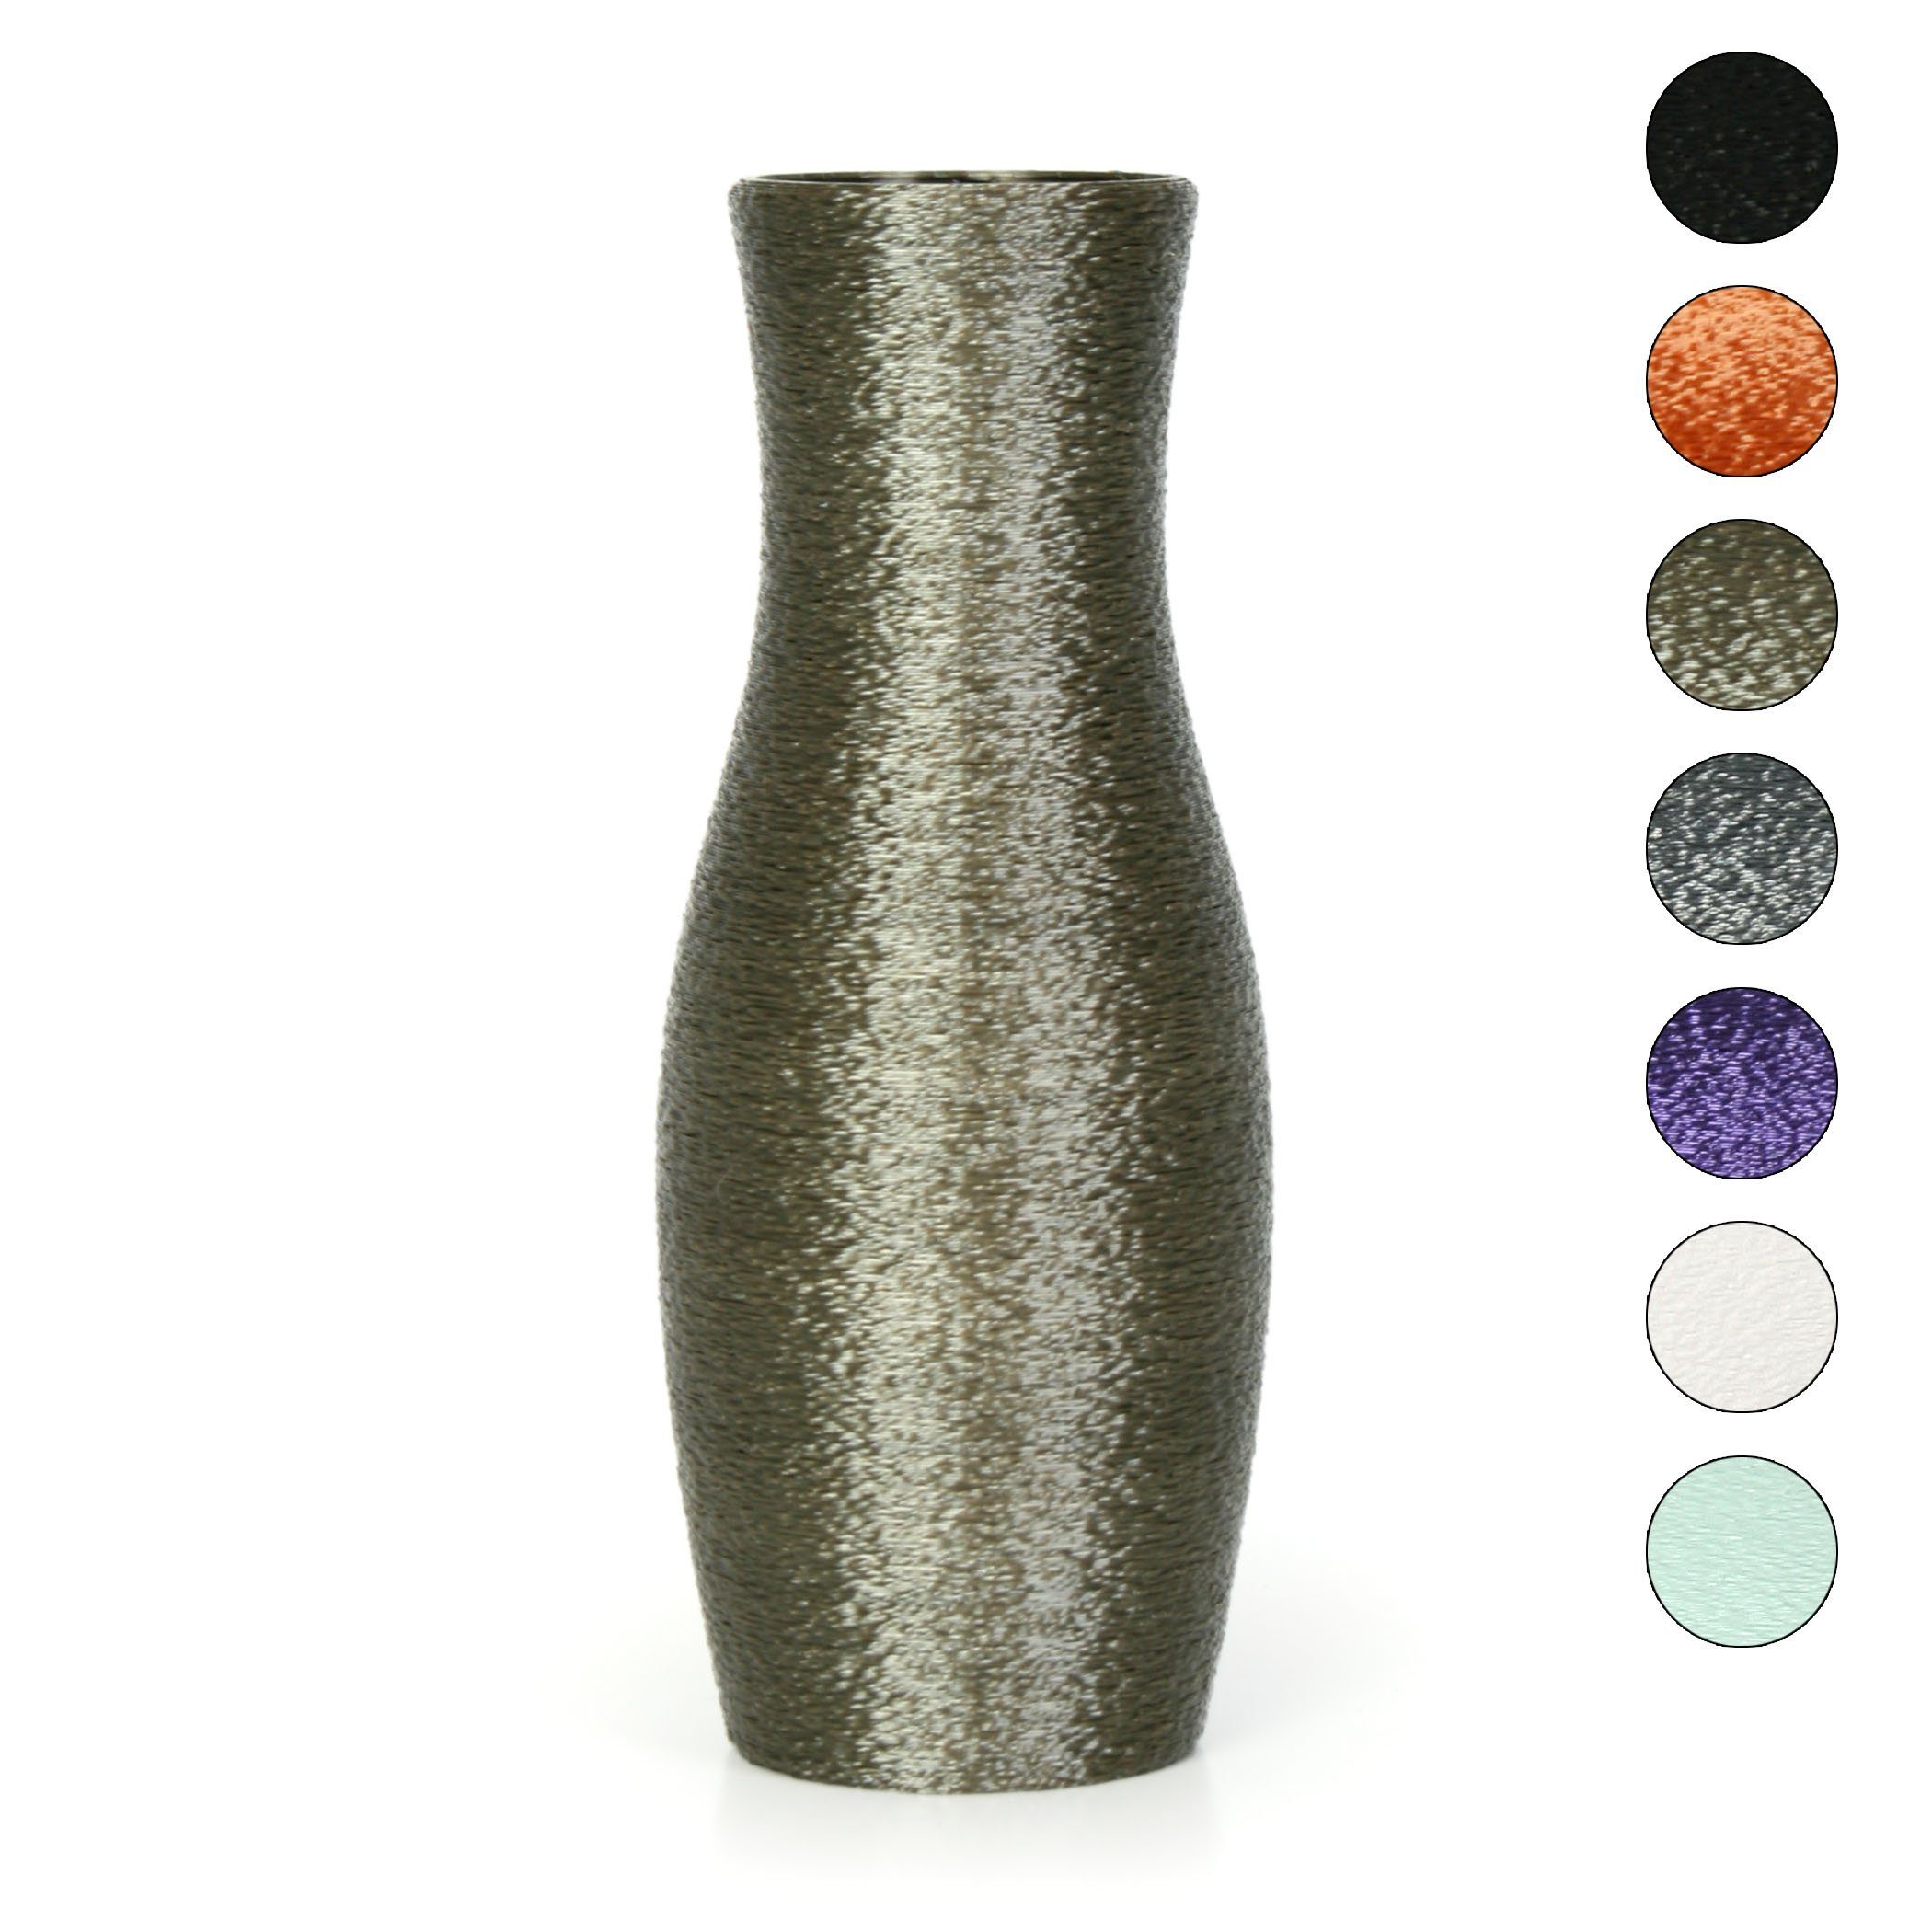 Kreative Feder Dekovase Designer Vase – Dekorative Blumenvase aus Bio-Kunststoff, aus nachwachsenden Rohstoffen; wasserdicht & bruchsicher Old Copper | Dekovasen